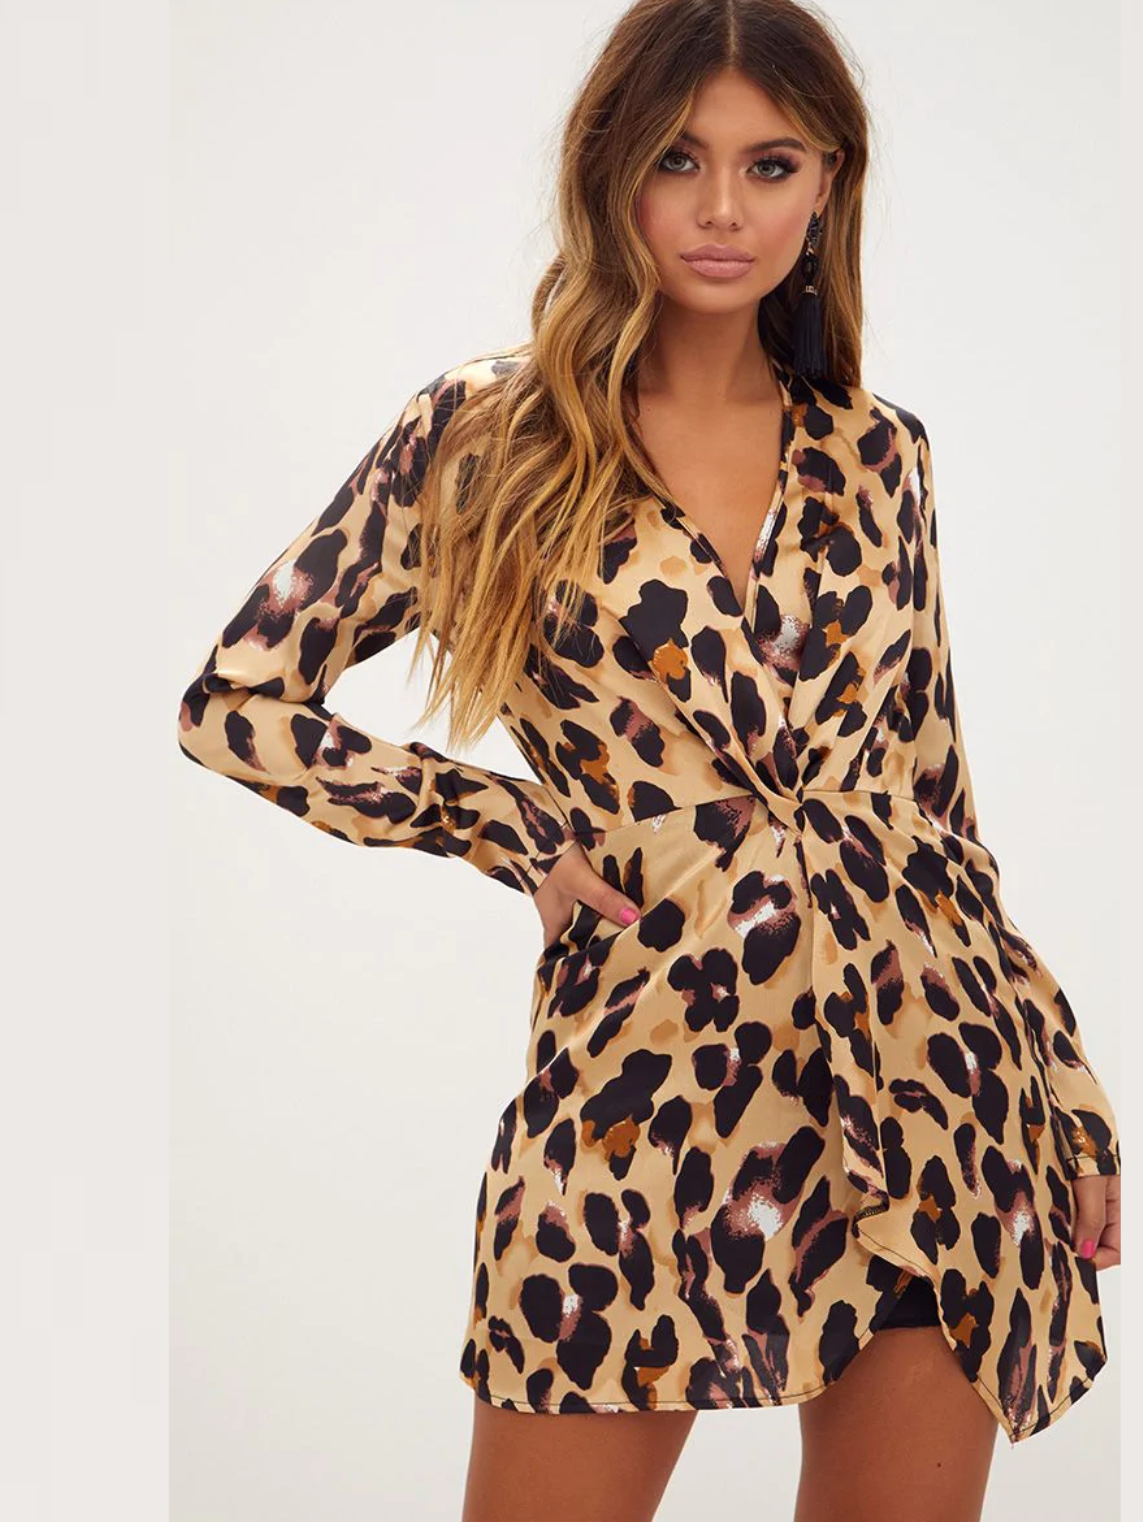 платье из леопардовой ткани фото